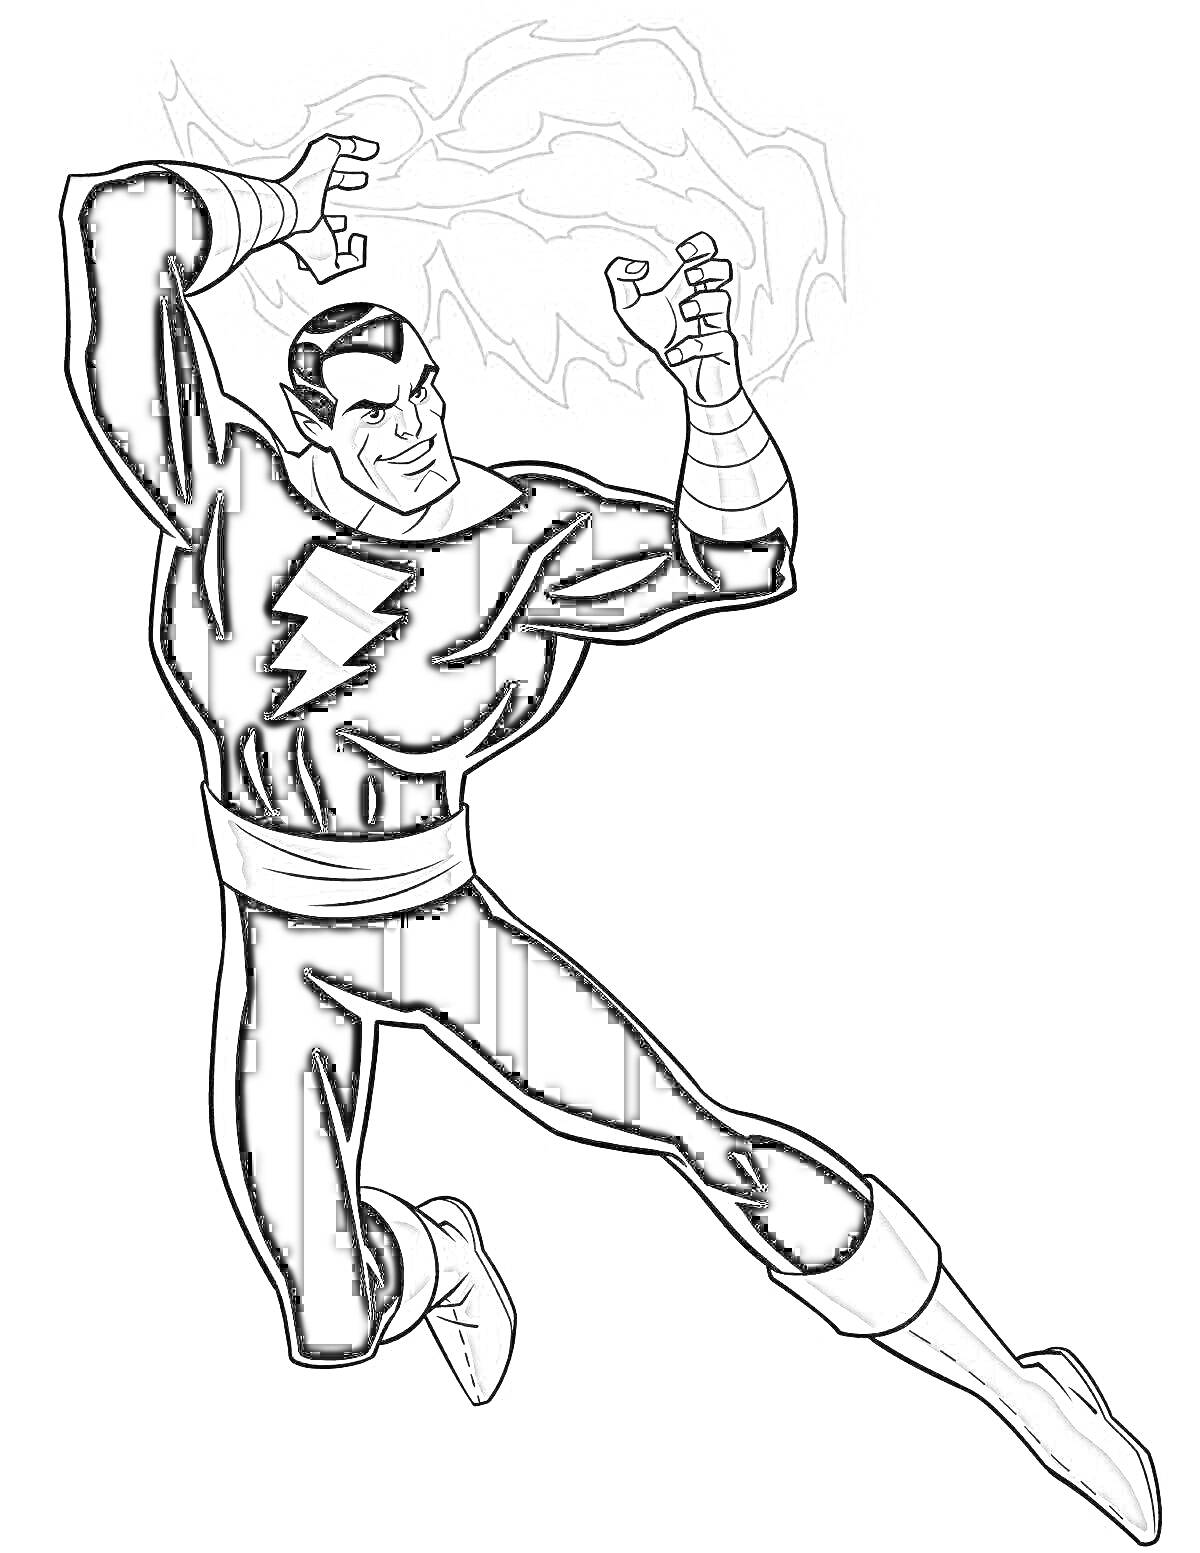 Раскраска Человек в костюме с молнией на груди стоит в боевой позе, с поднятыми руками, из которых выходят электрические разряды.